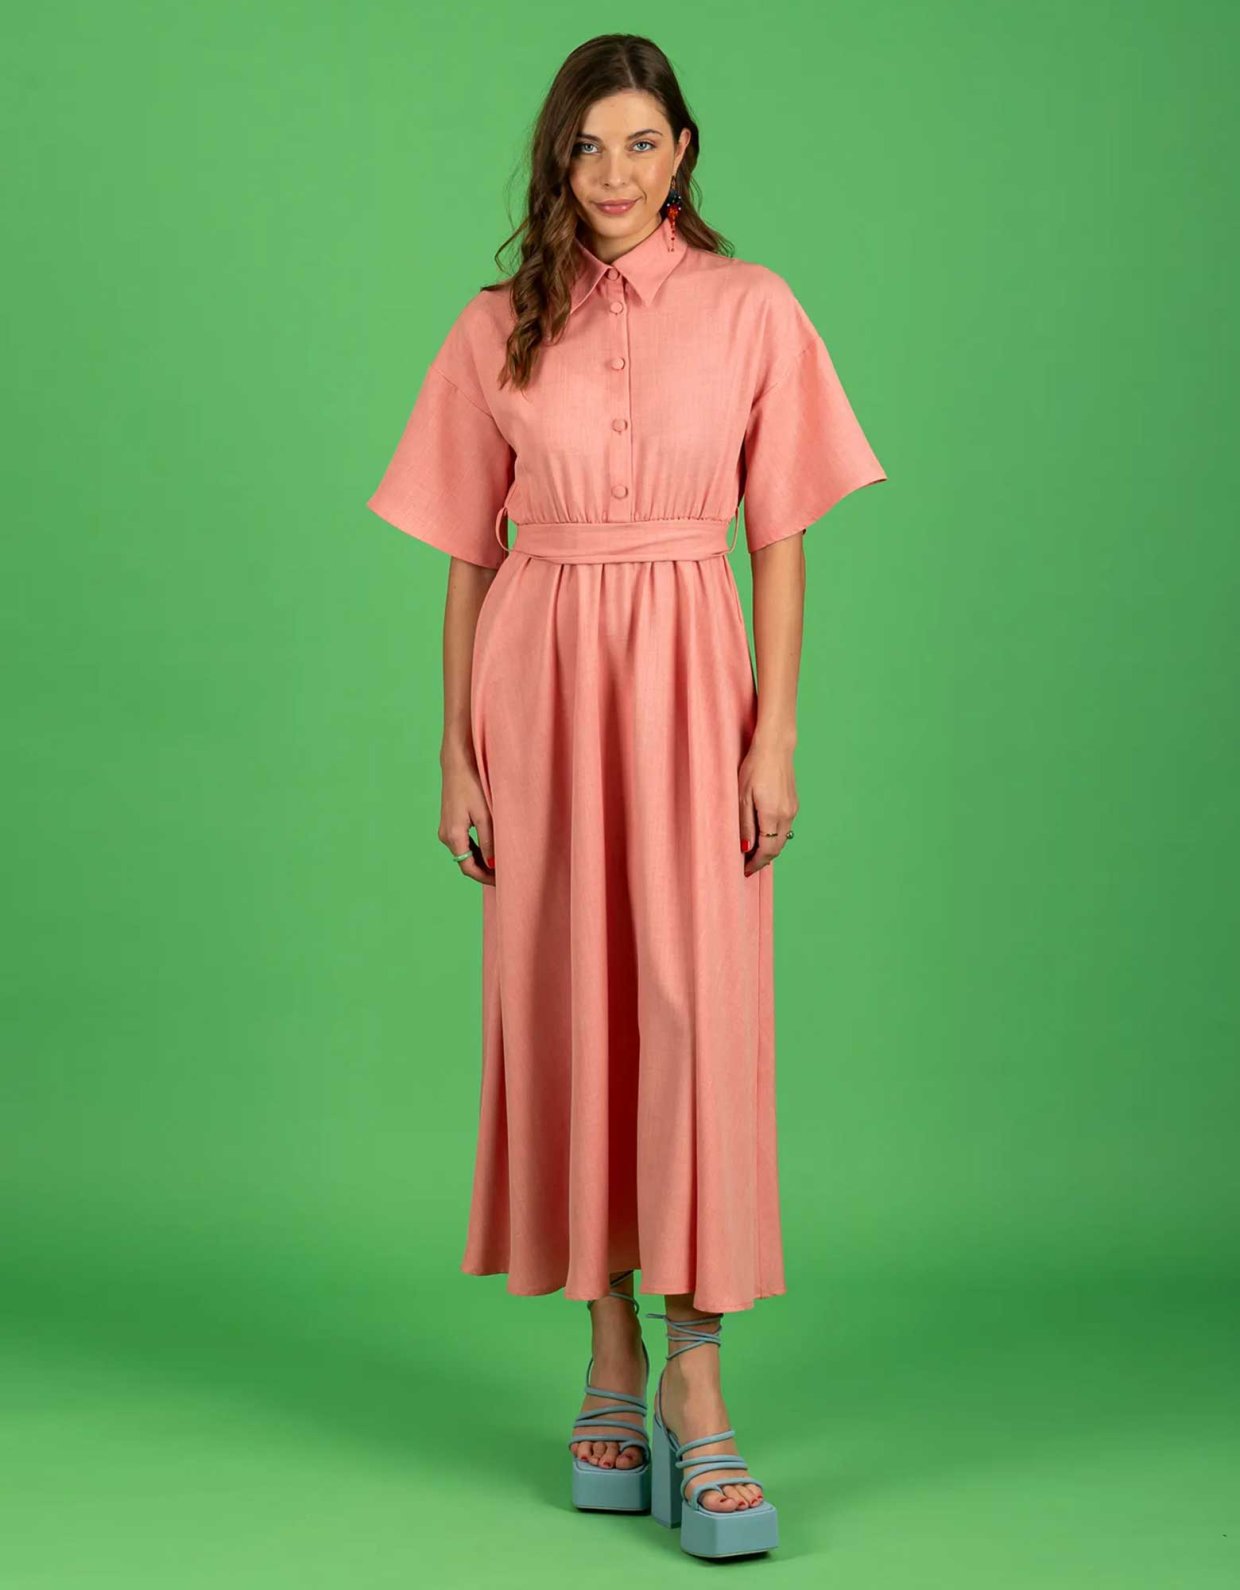 Chaton Corinna dress pink